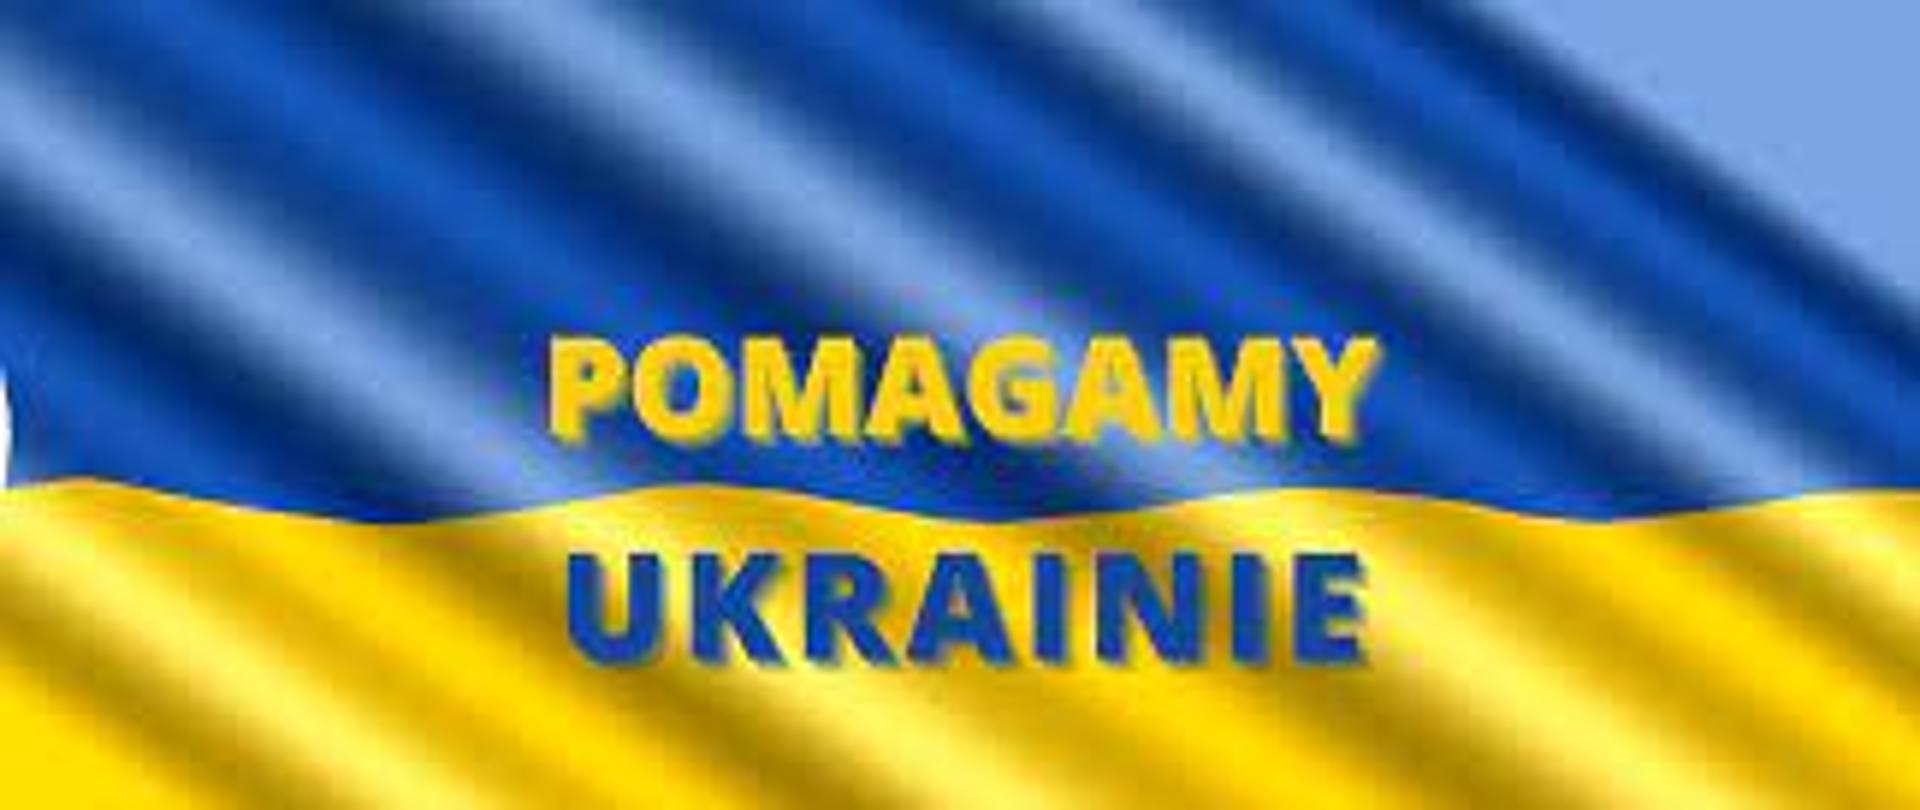 Grafika przedstawia flagę państwa Ukraina. Flaga jest dwukolorowa, górna część niebieska a dolna żółta. Na fladze znajduje się napis pomagamy Ukrainie